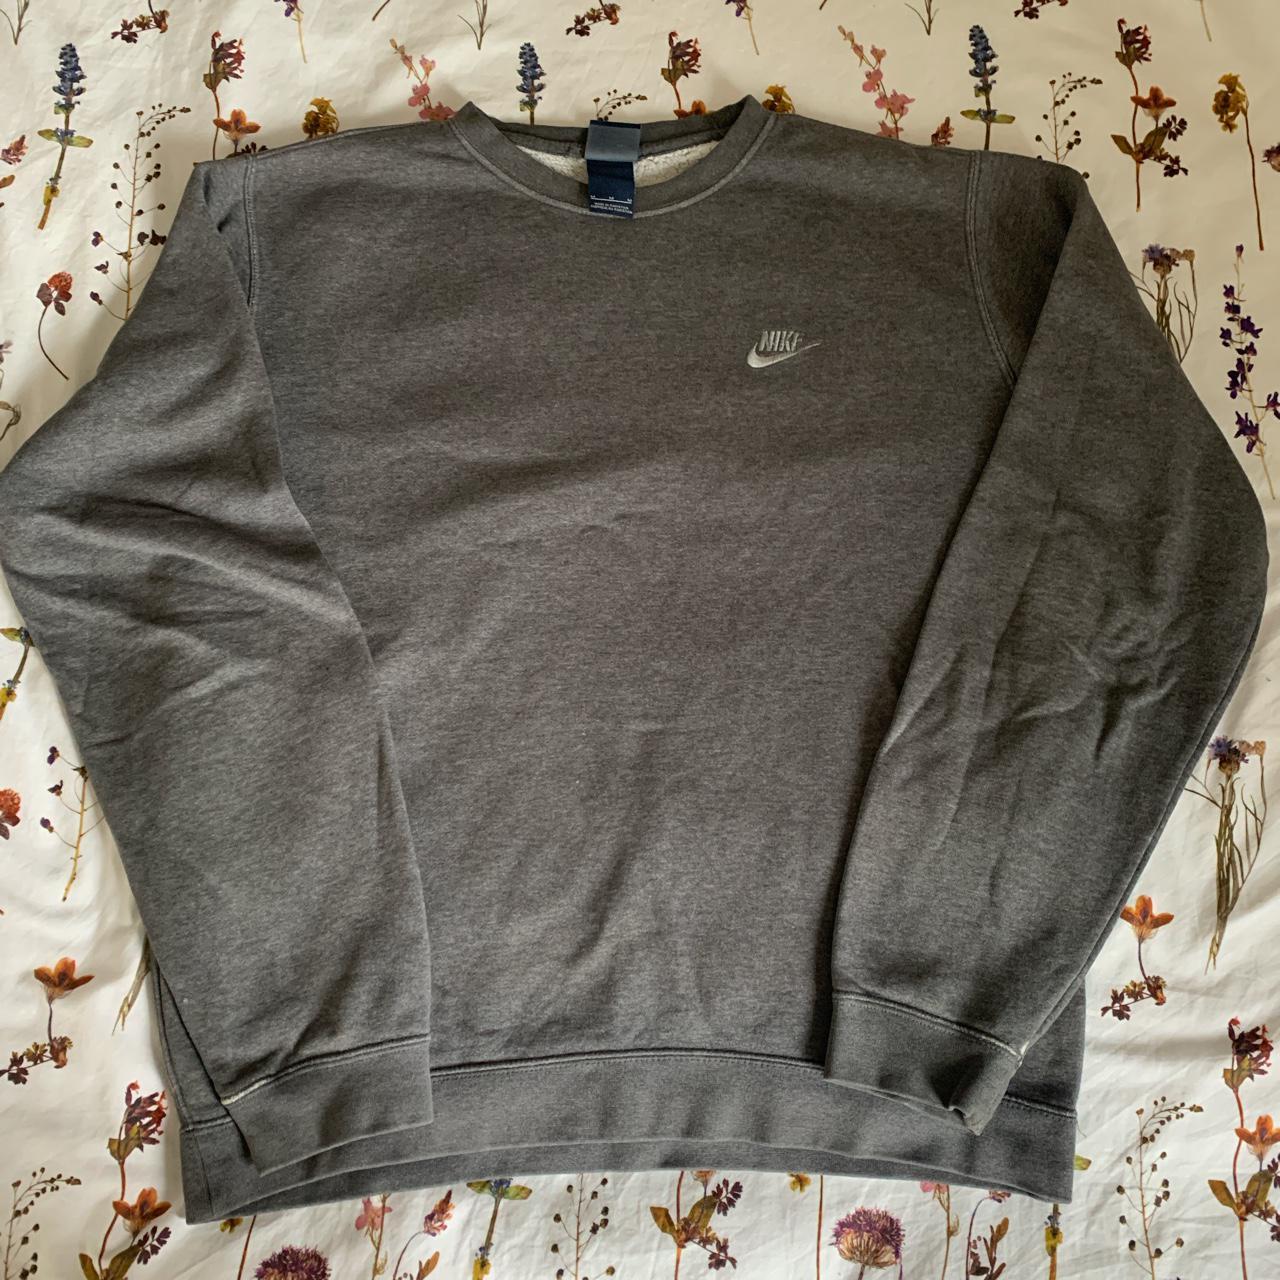 Men’s vintage gray Nike crew neck (sweatshirt) with... - Depop